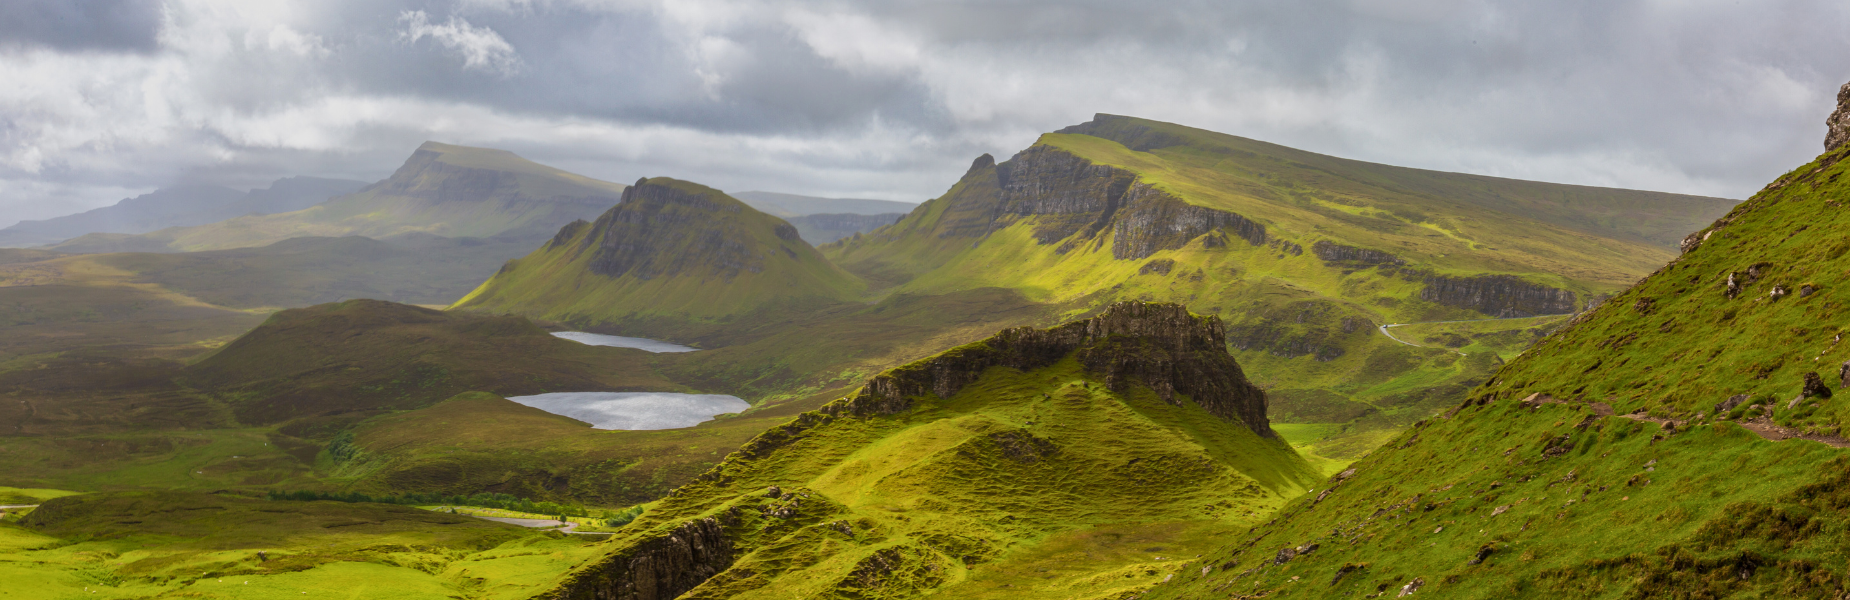 Uitgestrekt groen landschap met twee vijvertjes en bergpieken in Schotland